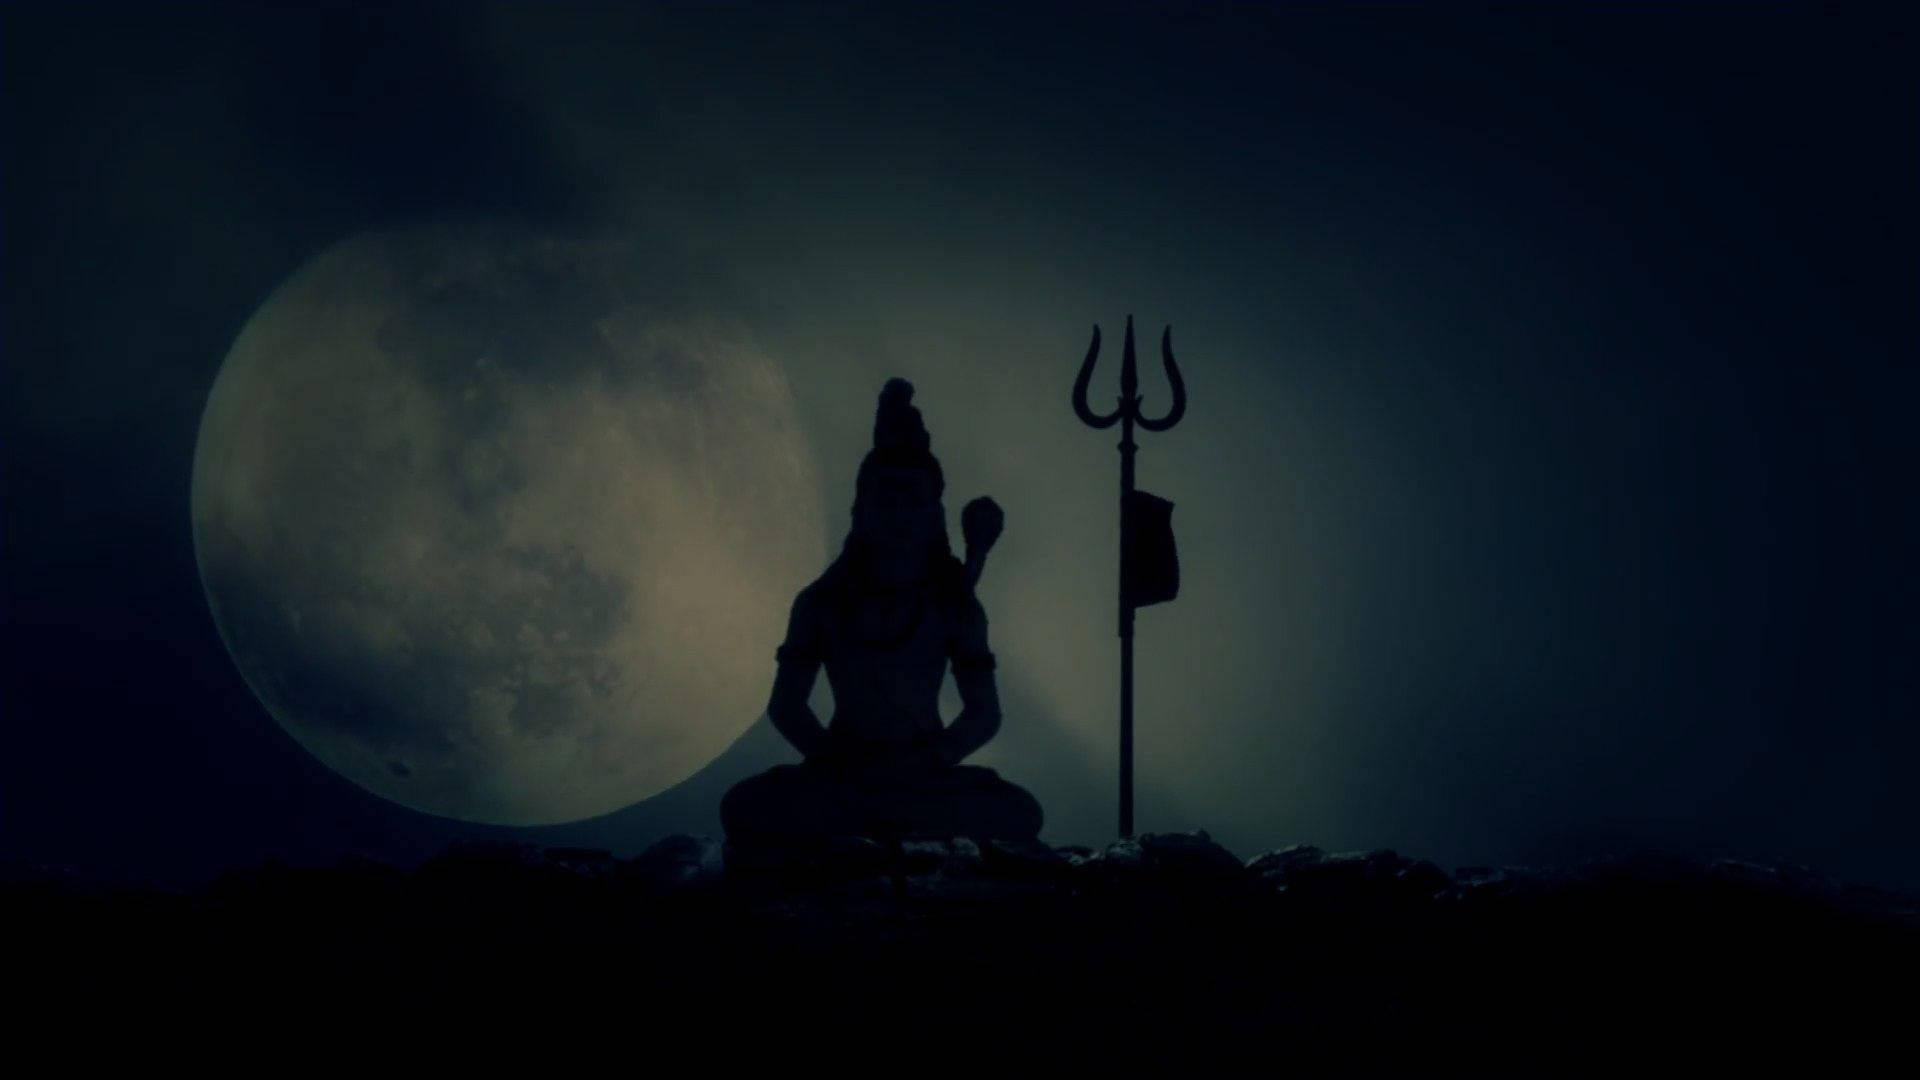 Dark Shiva Cloudy Full Moon Silhouette